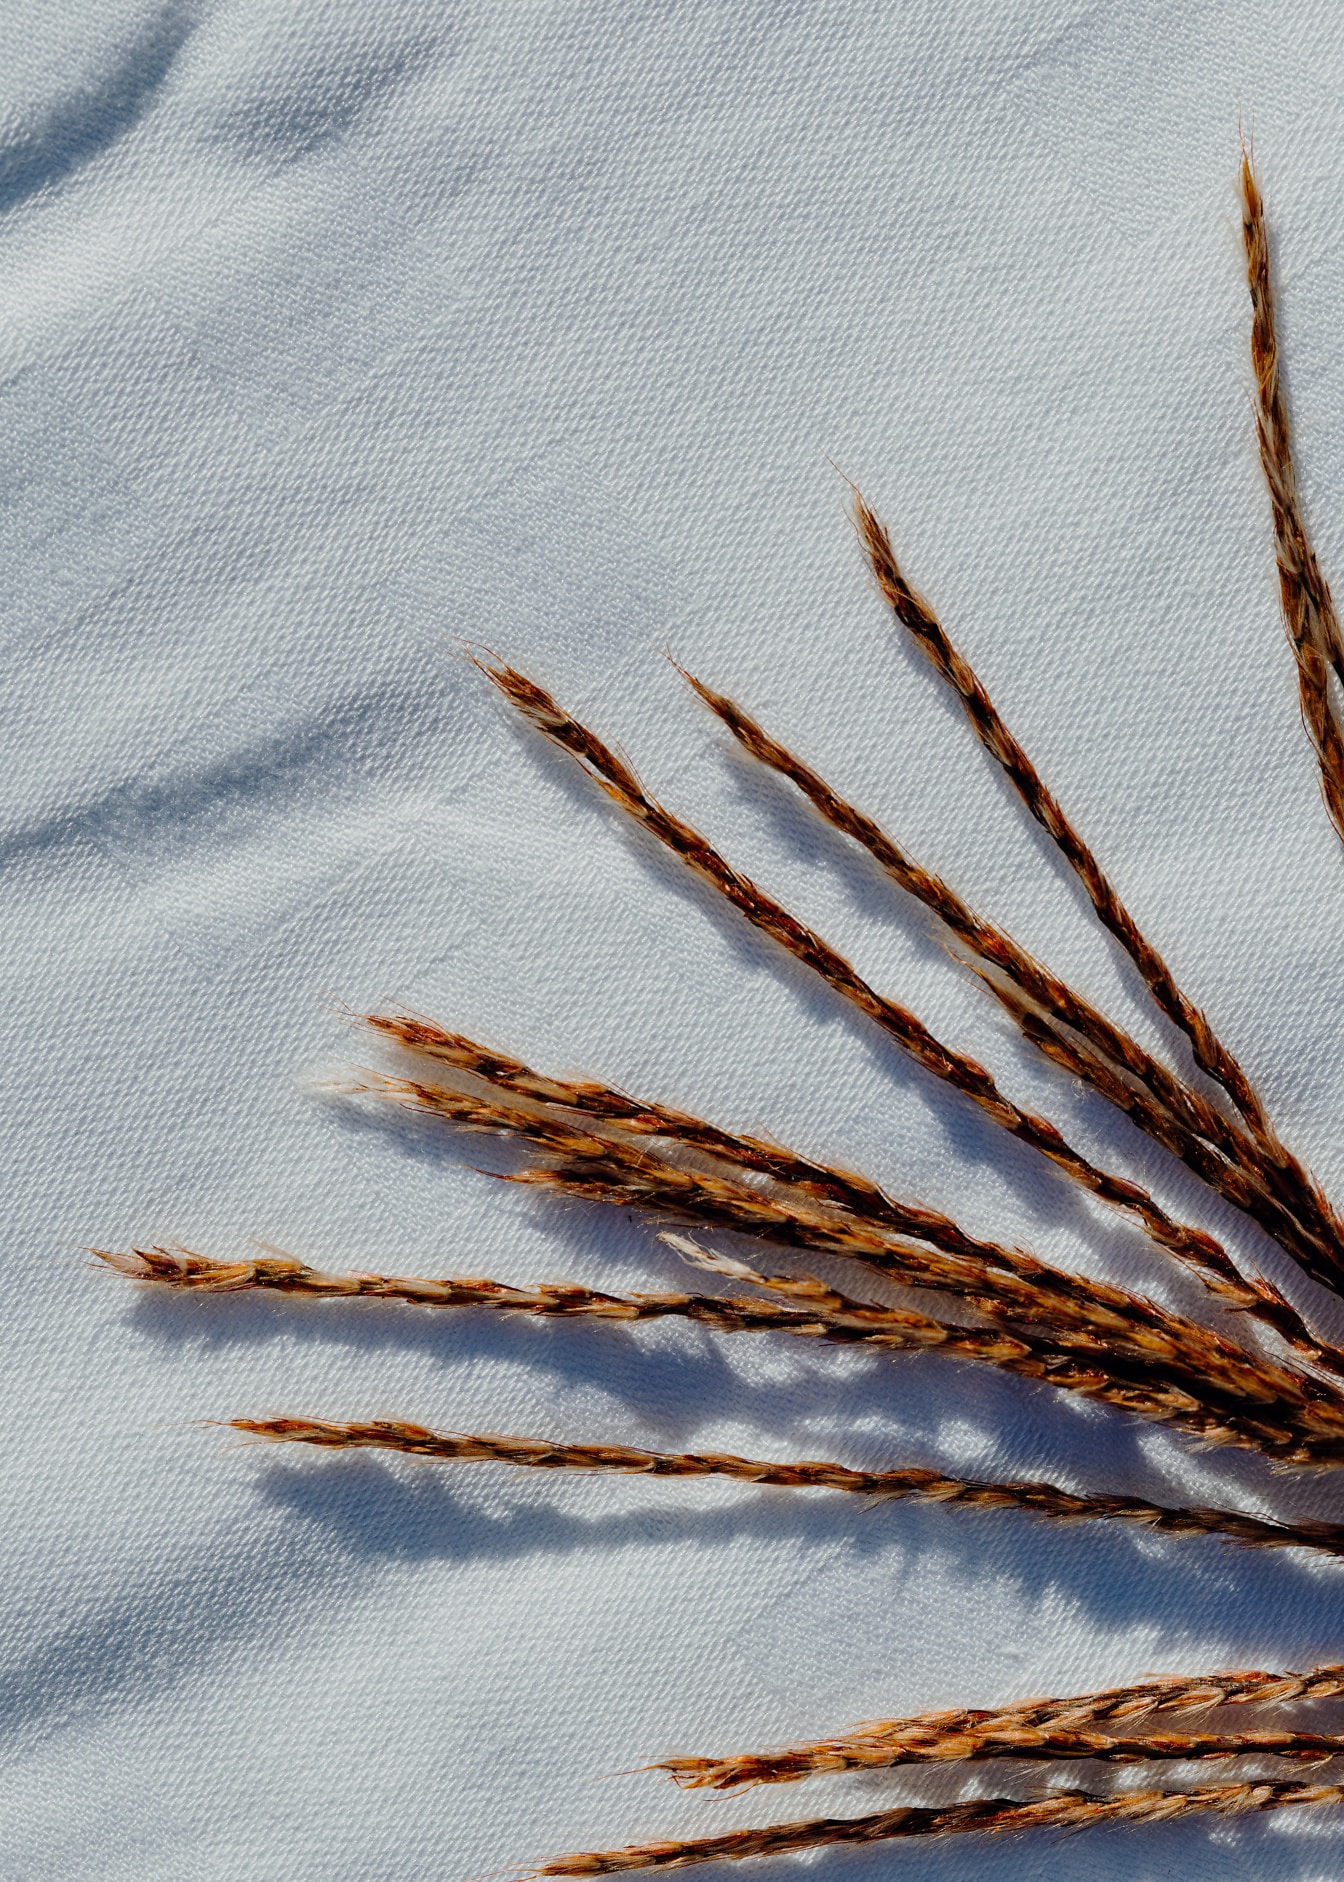 Steli d’erba marroni su tela di cotone bianca